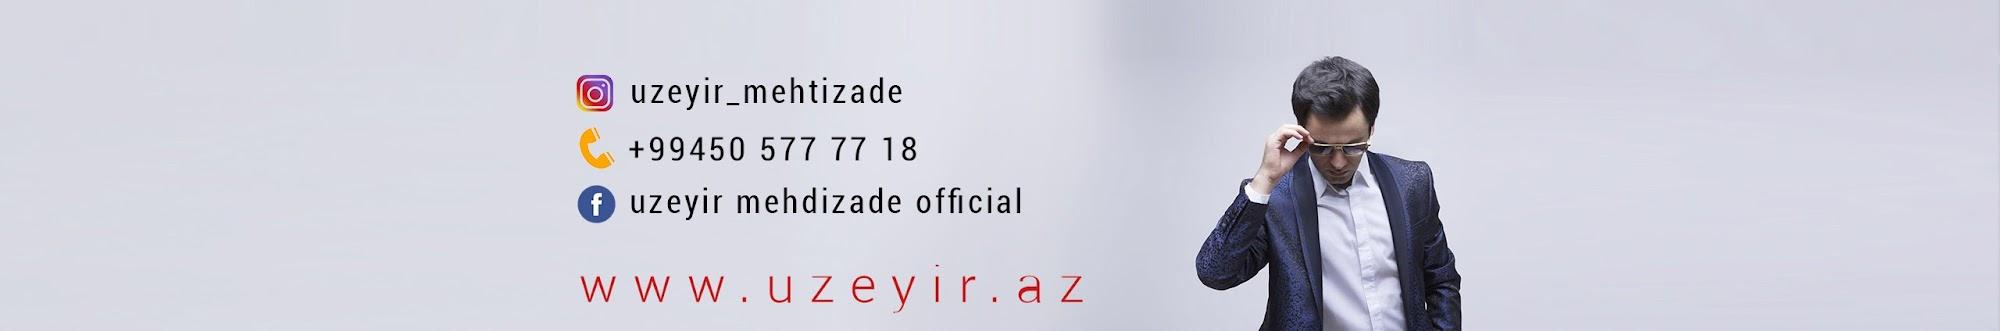 Uzeyir Mehdizade Official